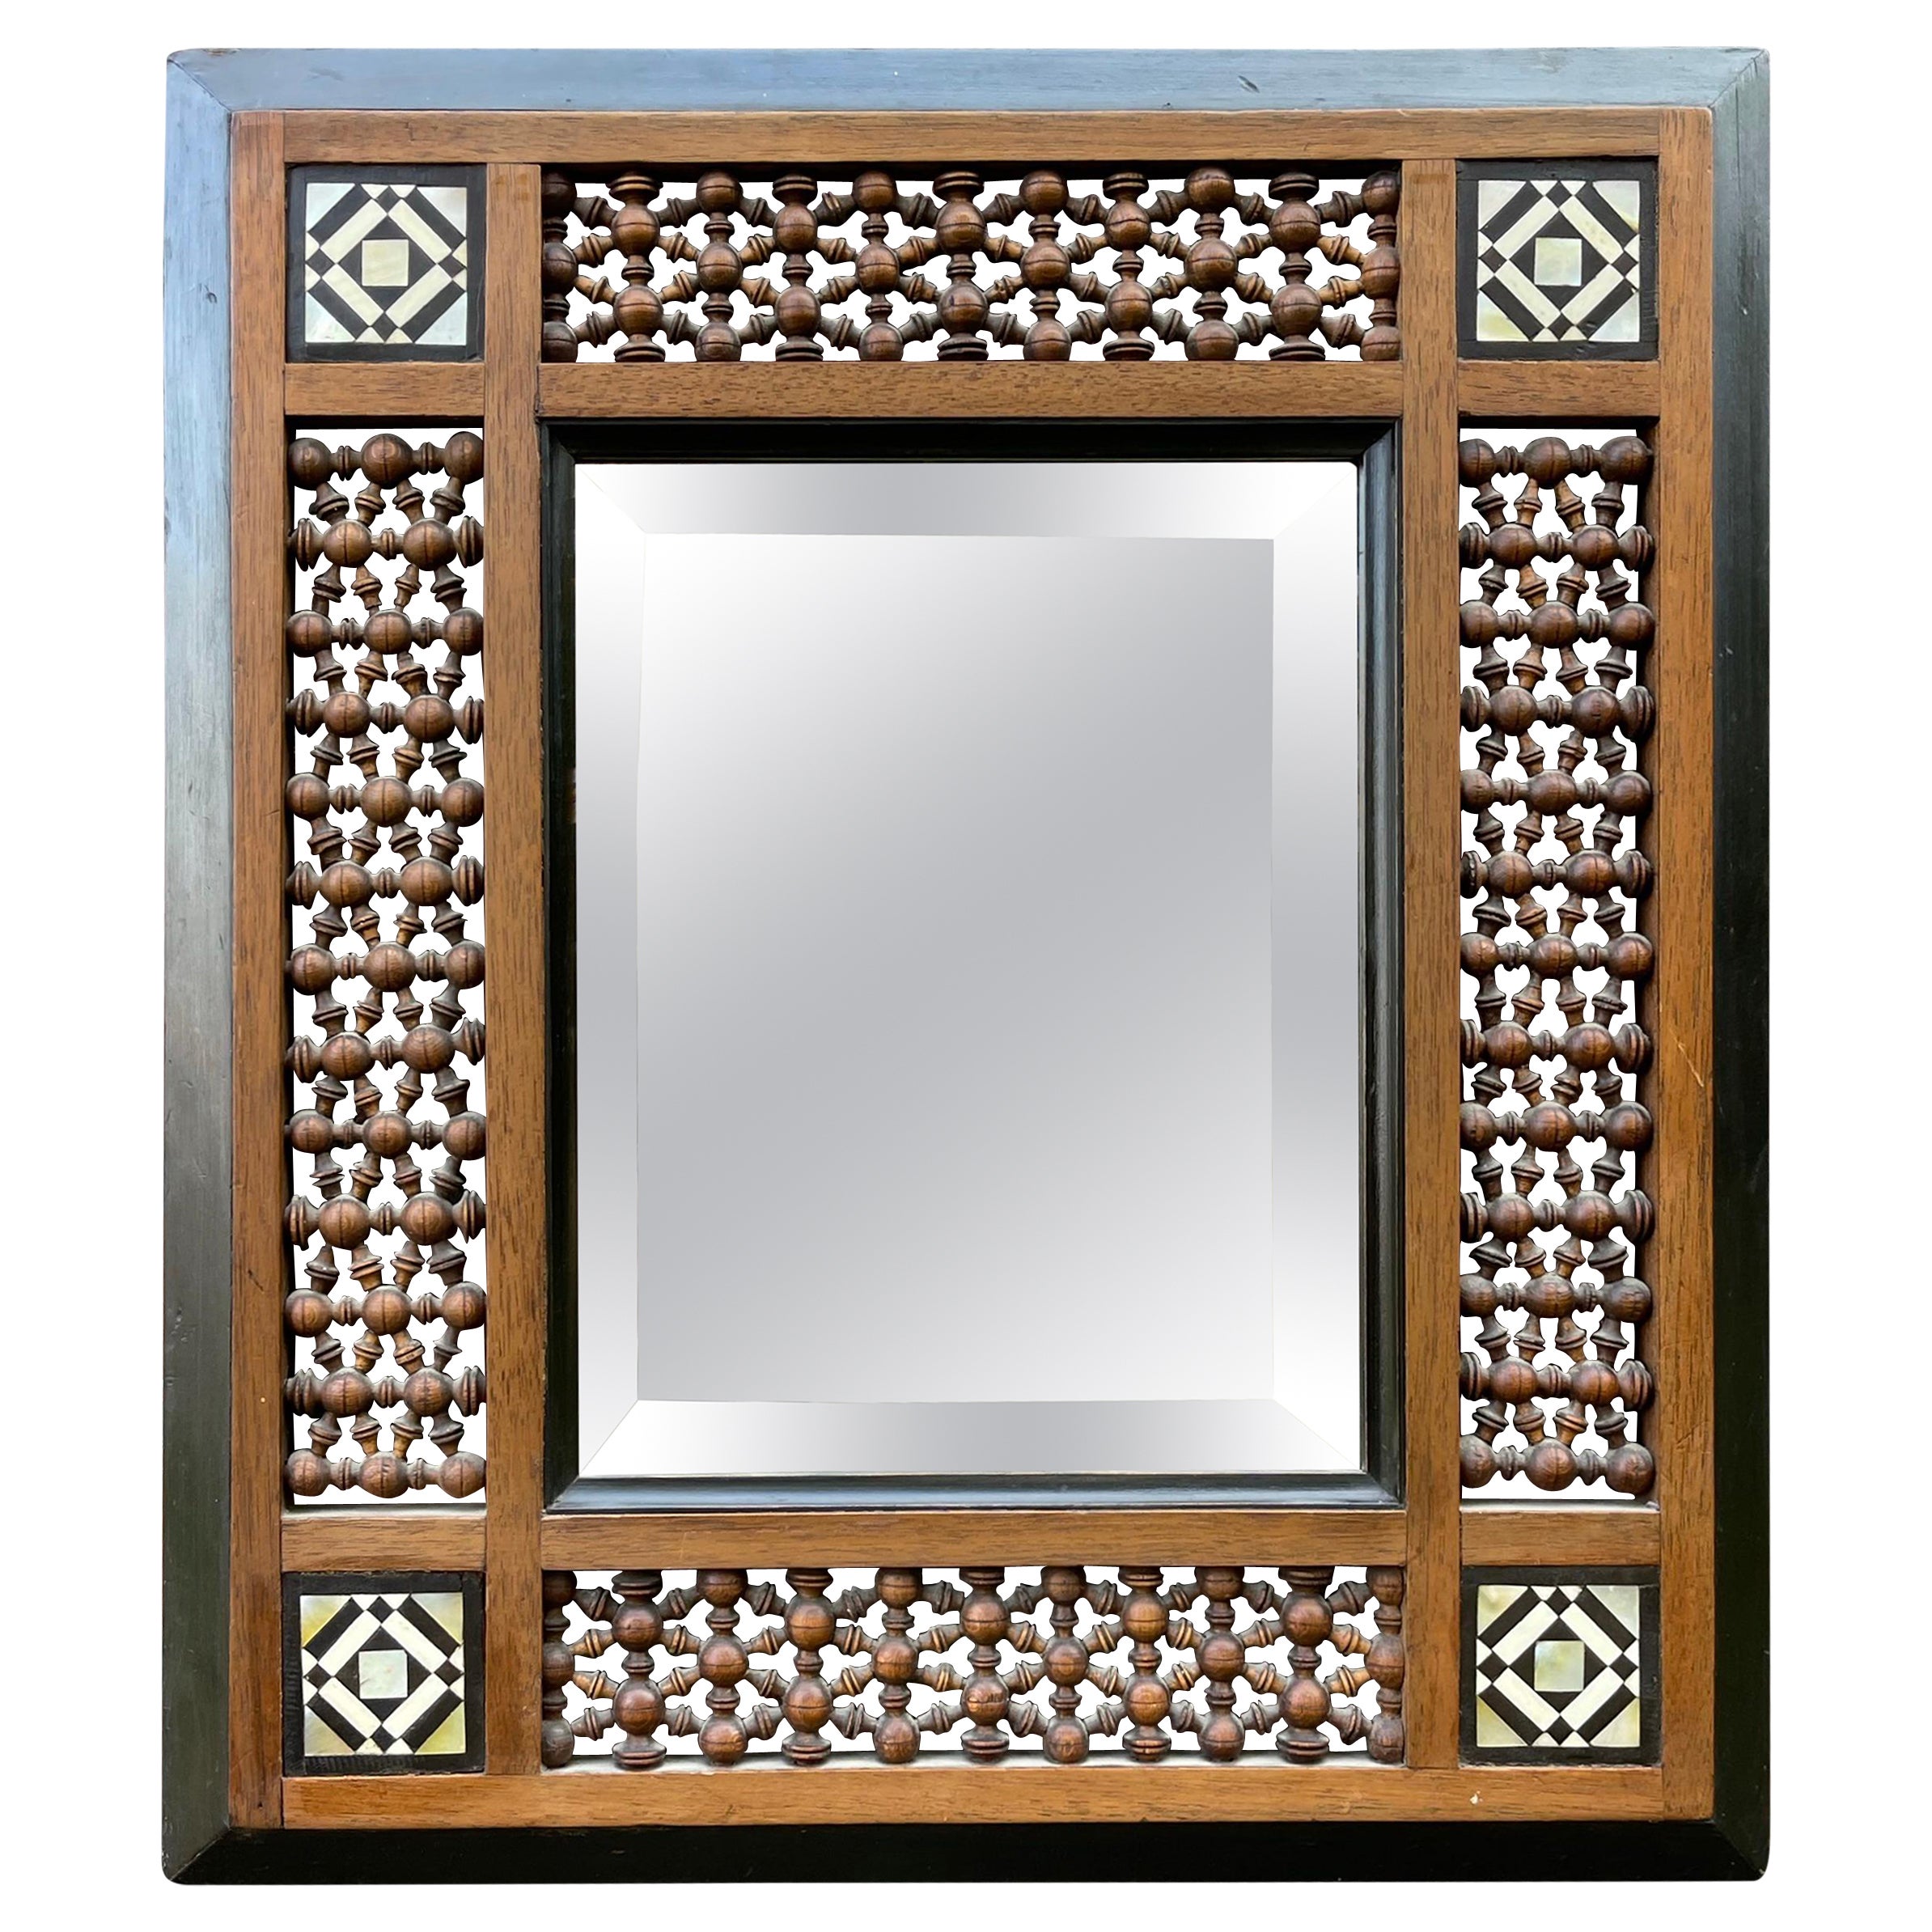 Superbe cadre / miroir espagnol ancien en bois, incrusté et tourné